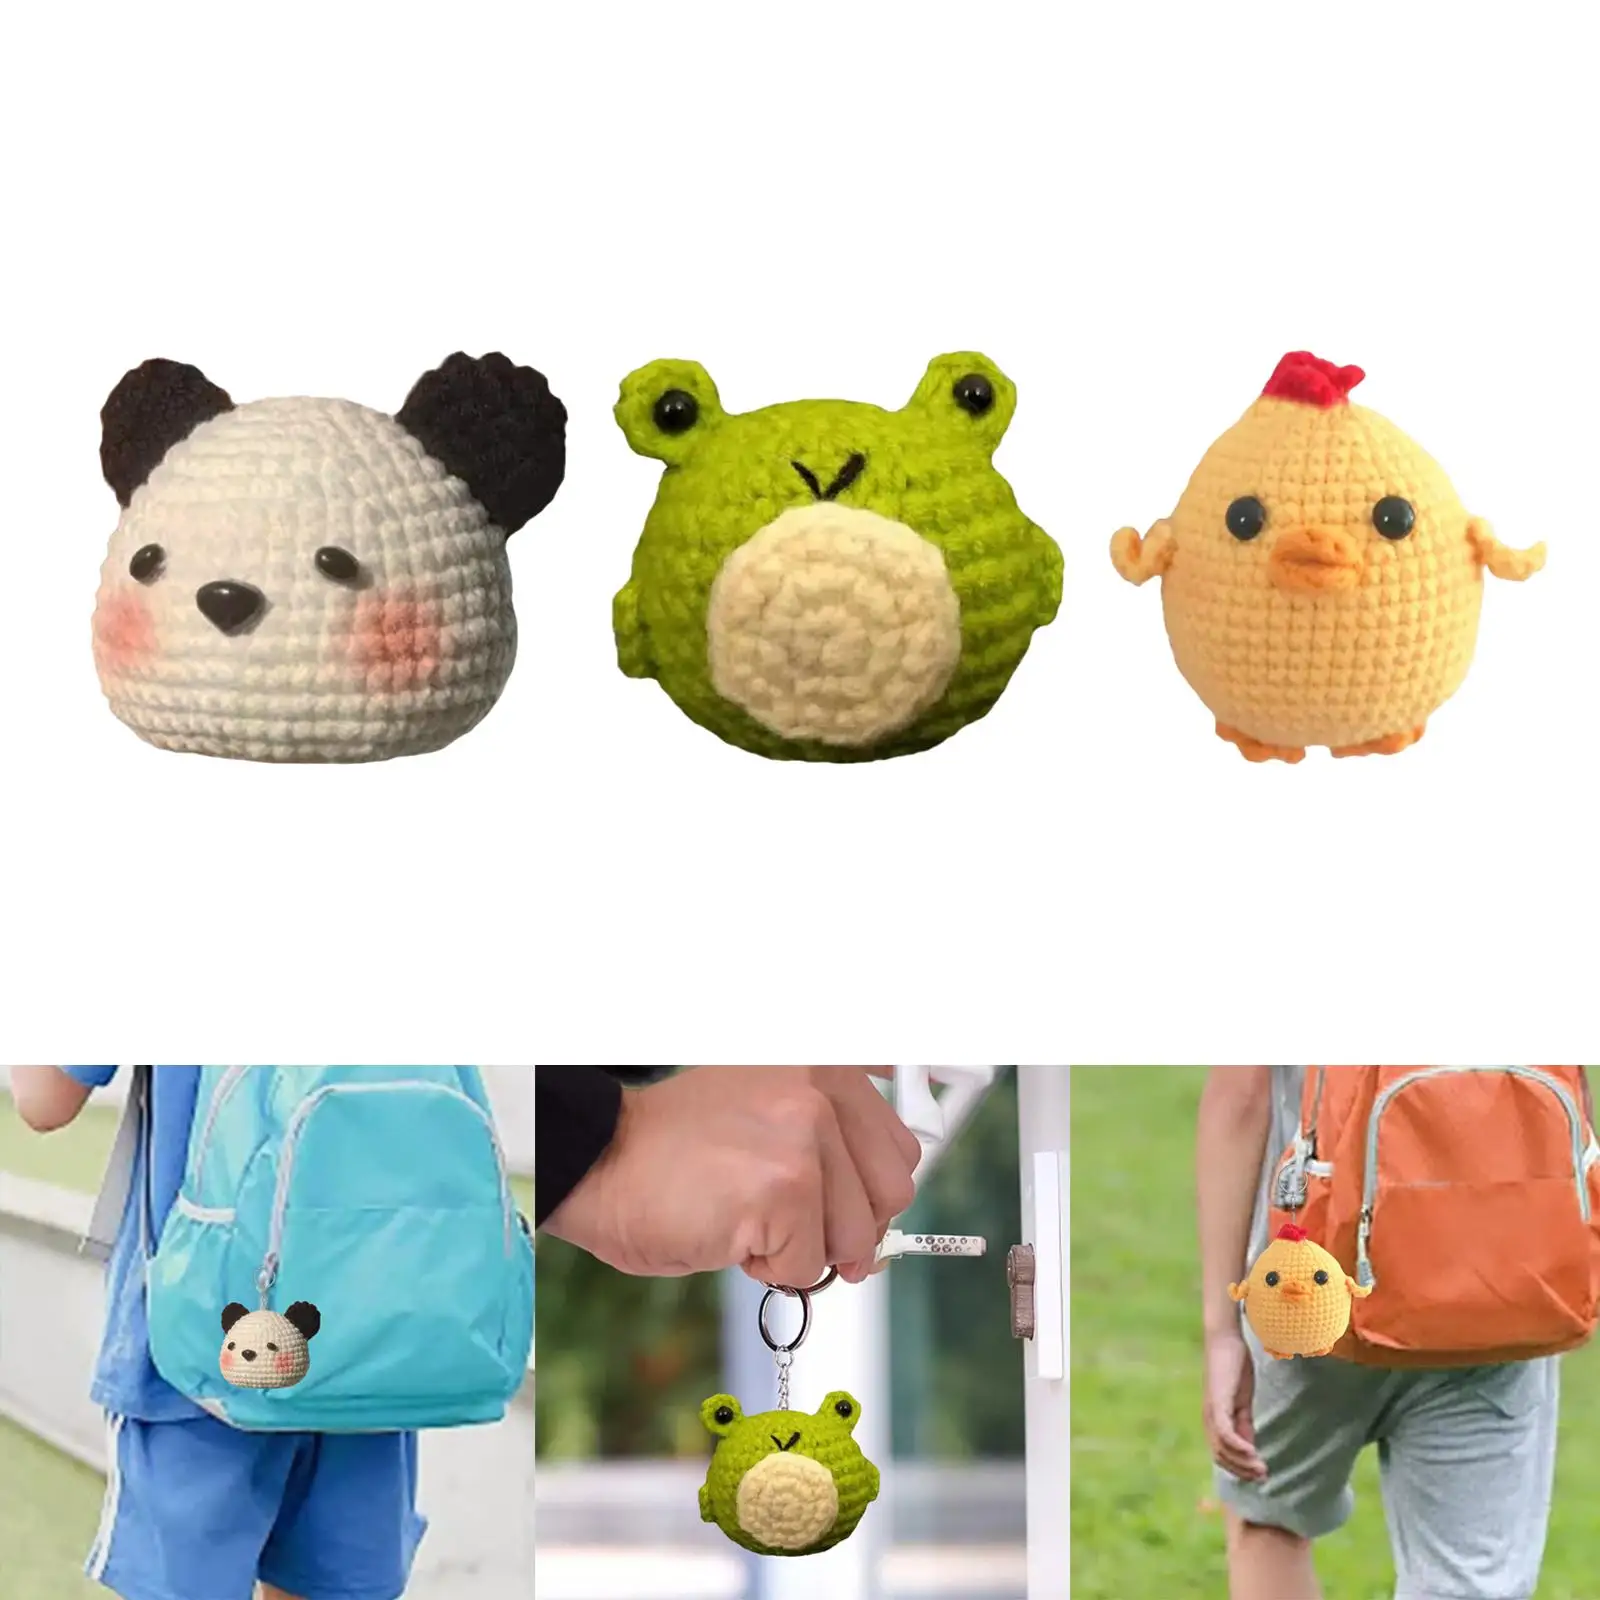 DIY Panda Doll Crochet Kit Sewing Your Own Crochet Kit for Birthday Gift Beginner